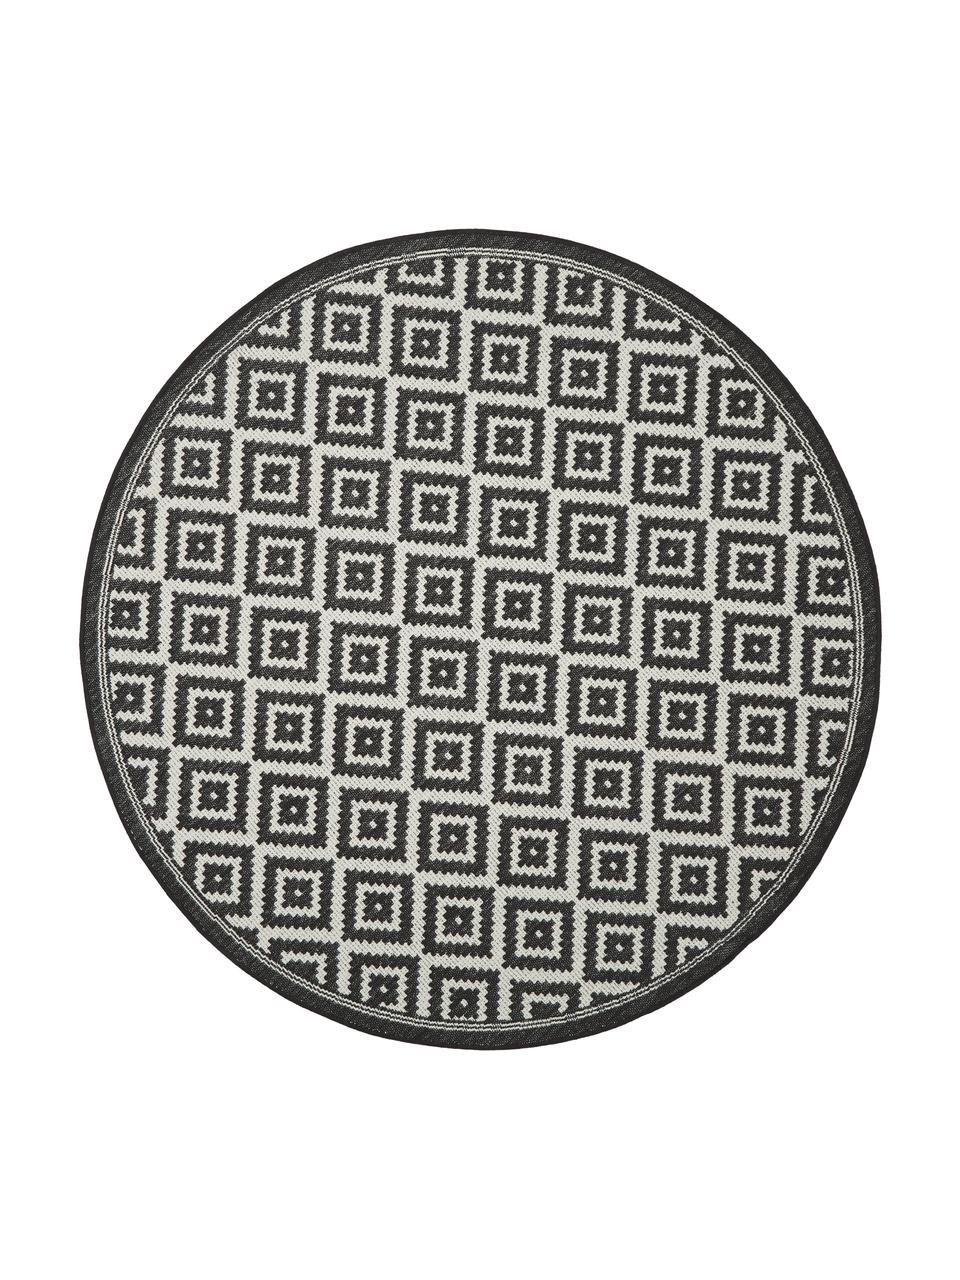 Rond in- en outdoor vloerkleed met patroon Miami in zwart/wit, 86% polypropyleen, 14% polyester, Wit, zwart, Ø 200 cm (maat L)